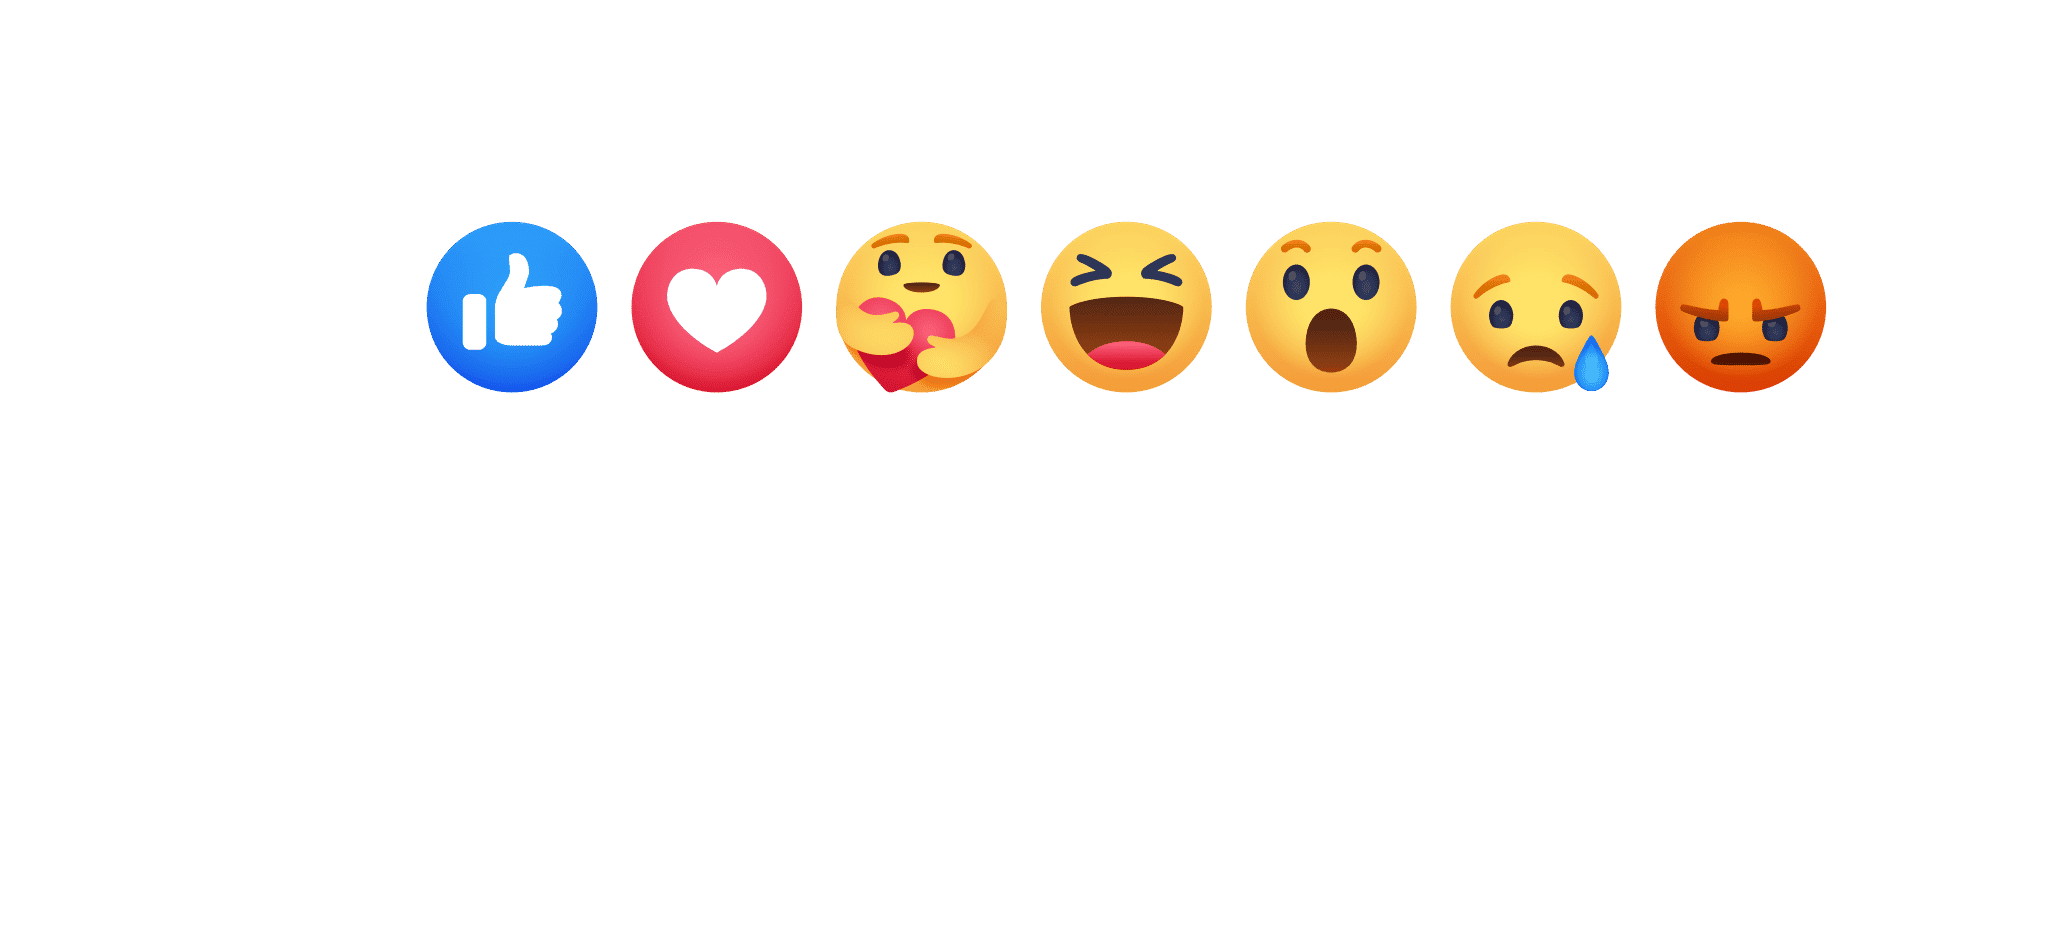 Cry Laugh Emoji Meme Fotodruck Von Gabe12 Redbubble